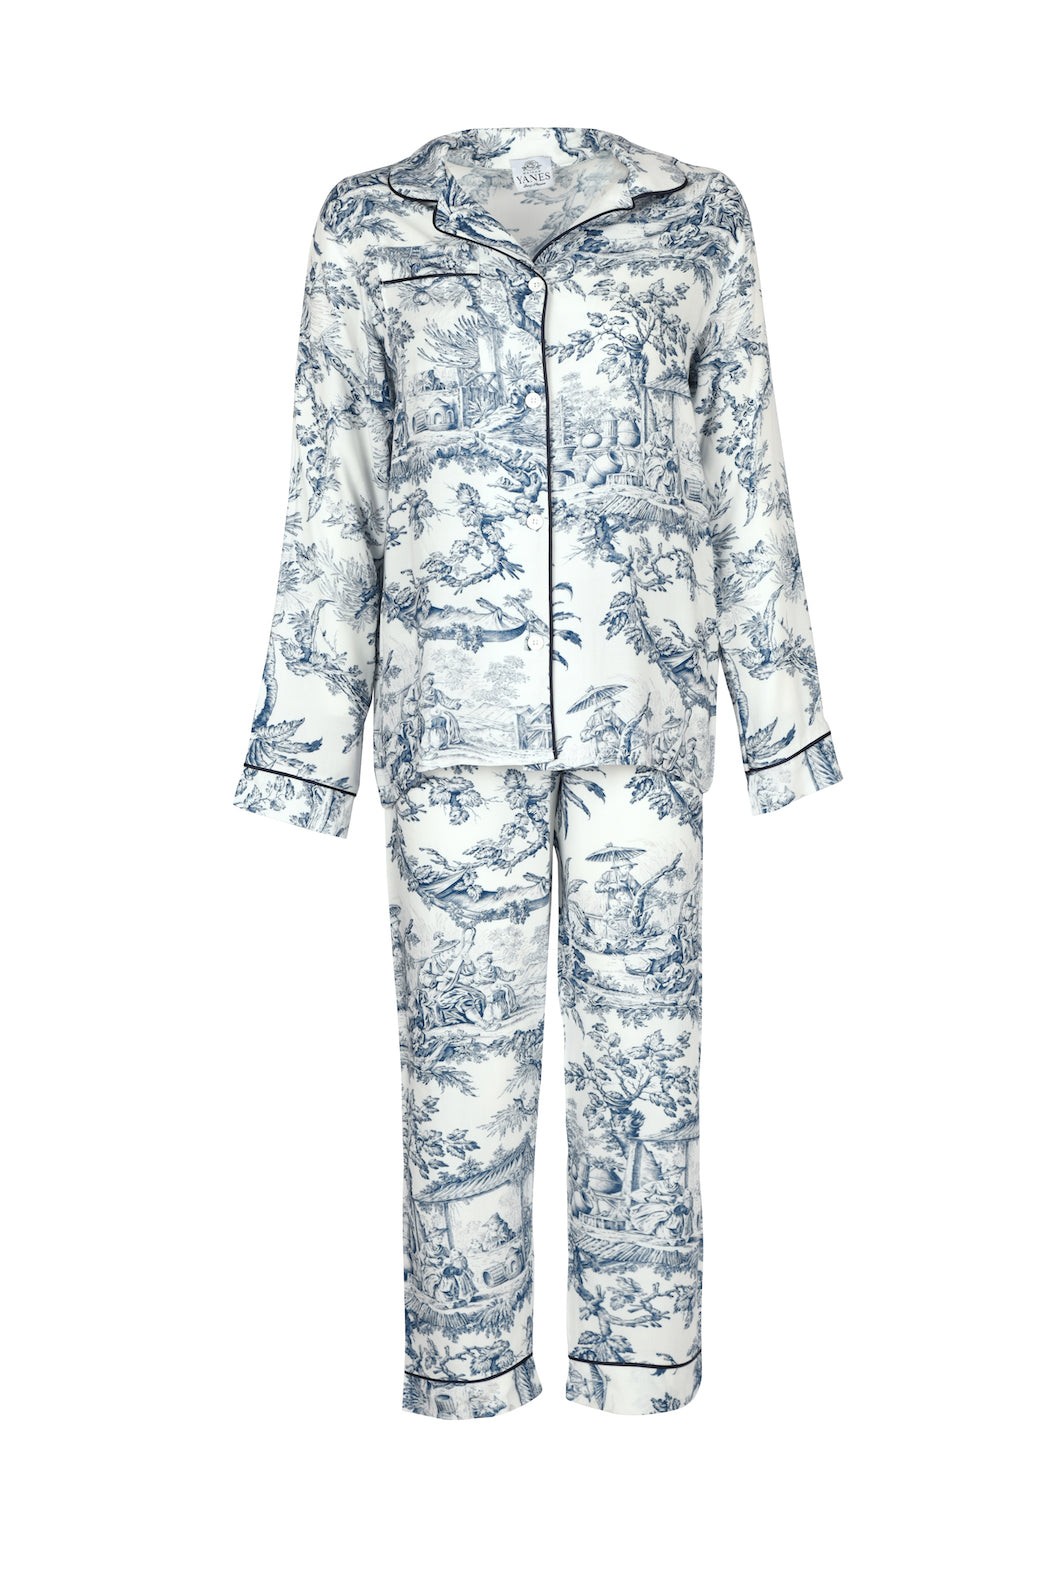 Chinese Garden Men's Pajamas Set